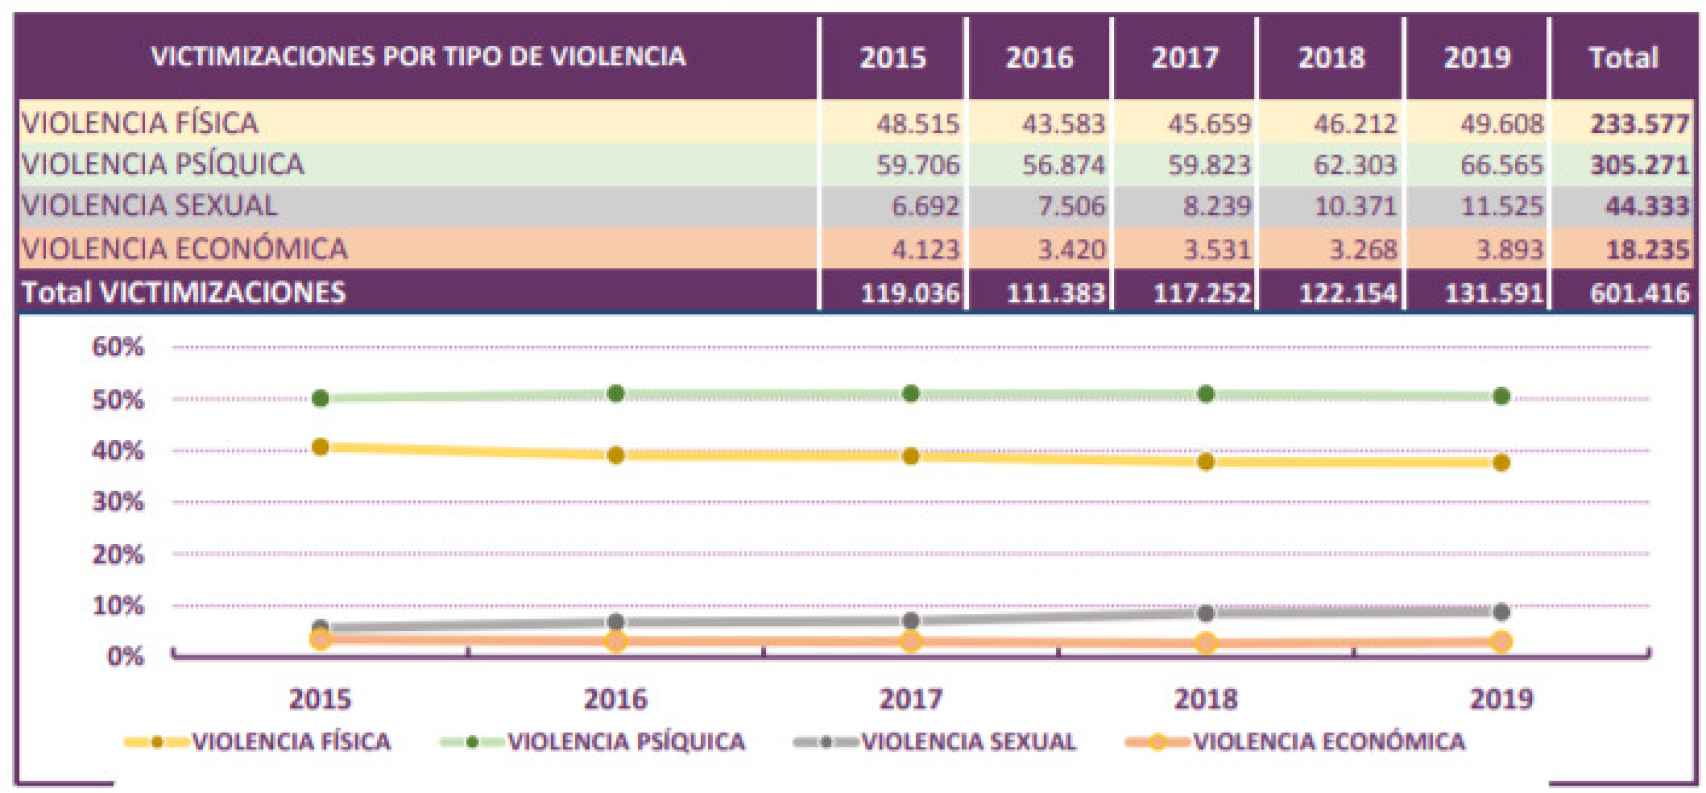 Distribución anual de las victimizaciones por tipo de violencia, presentadas por el Ministerio del Interior.